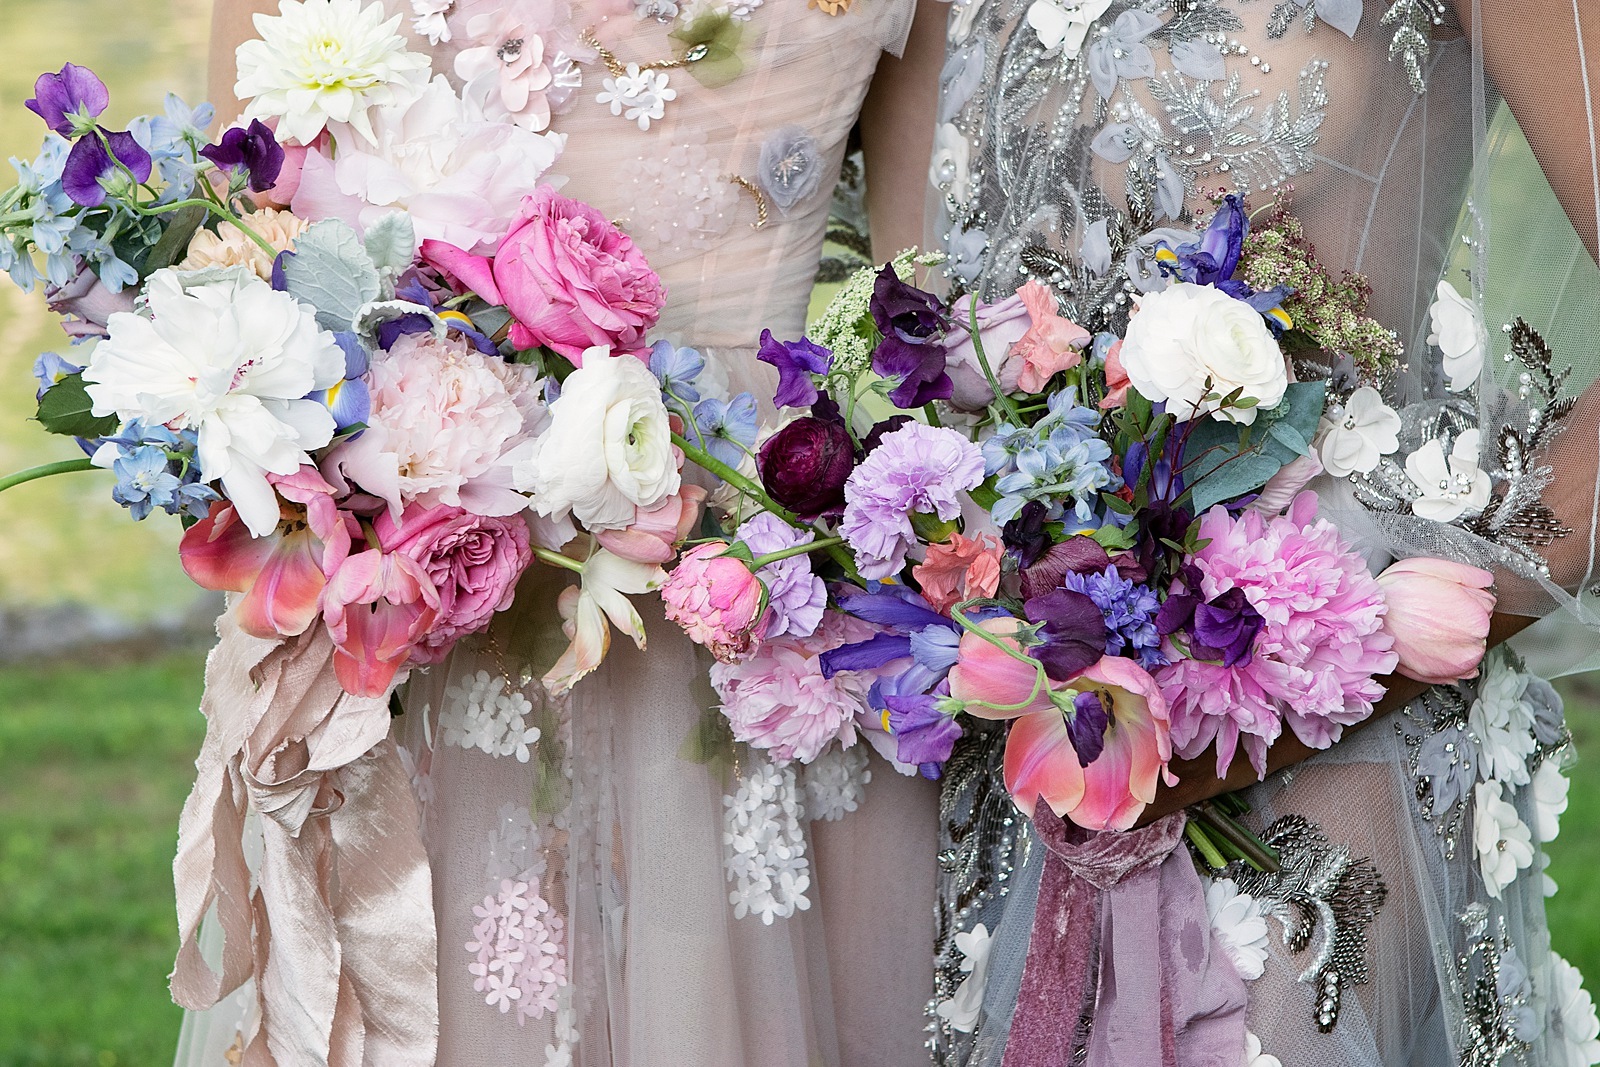 Monet’s Garden: Wedding Inspiration for the Flower Lovers